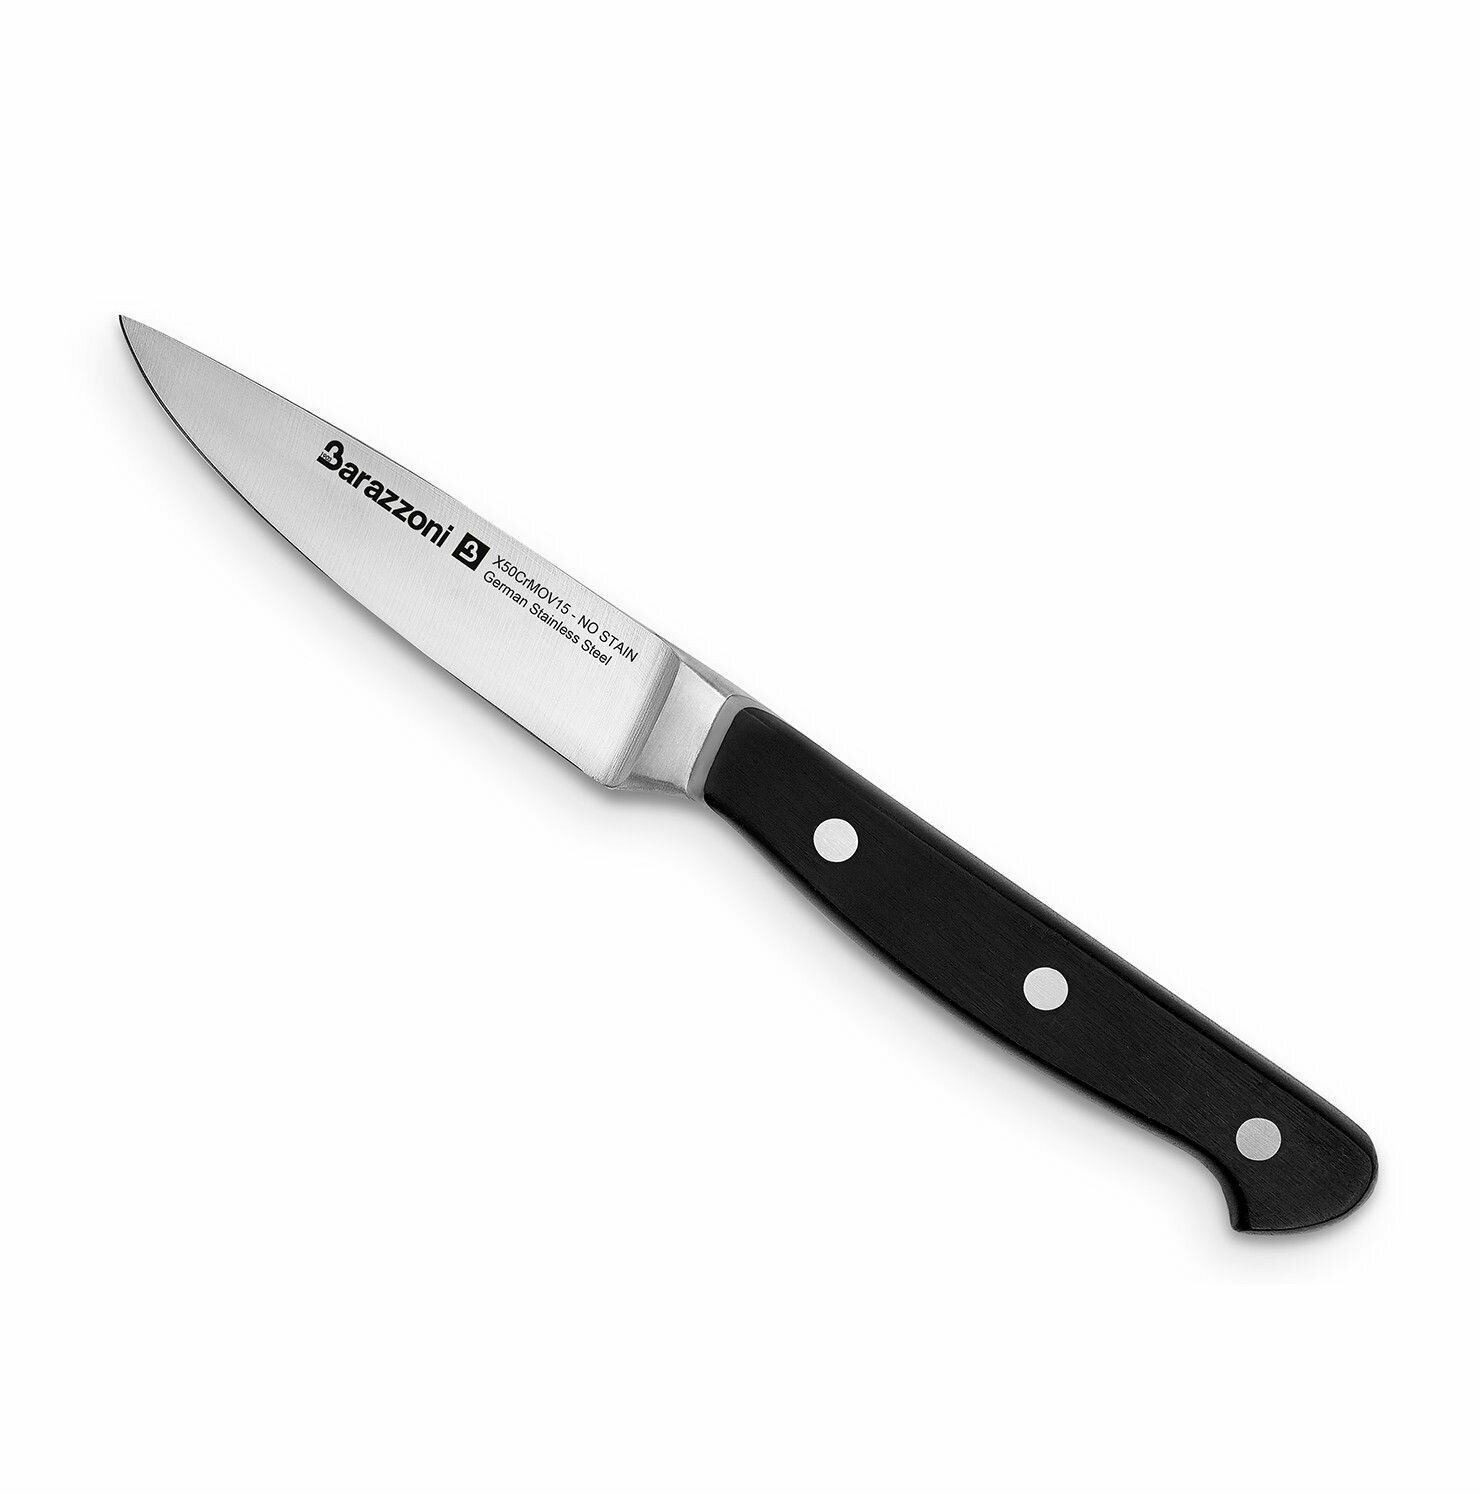 Нож кухонный для чистки овощей Barazzoni Knives Paring длина лезвия 9 см нержавеющая хромовая сталь цвет черный